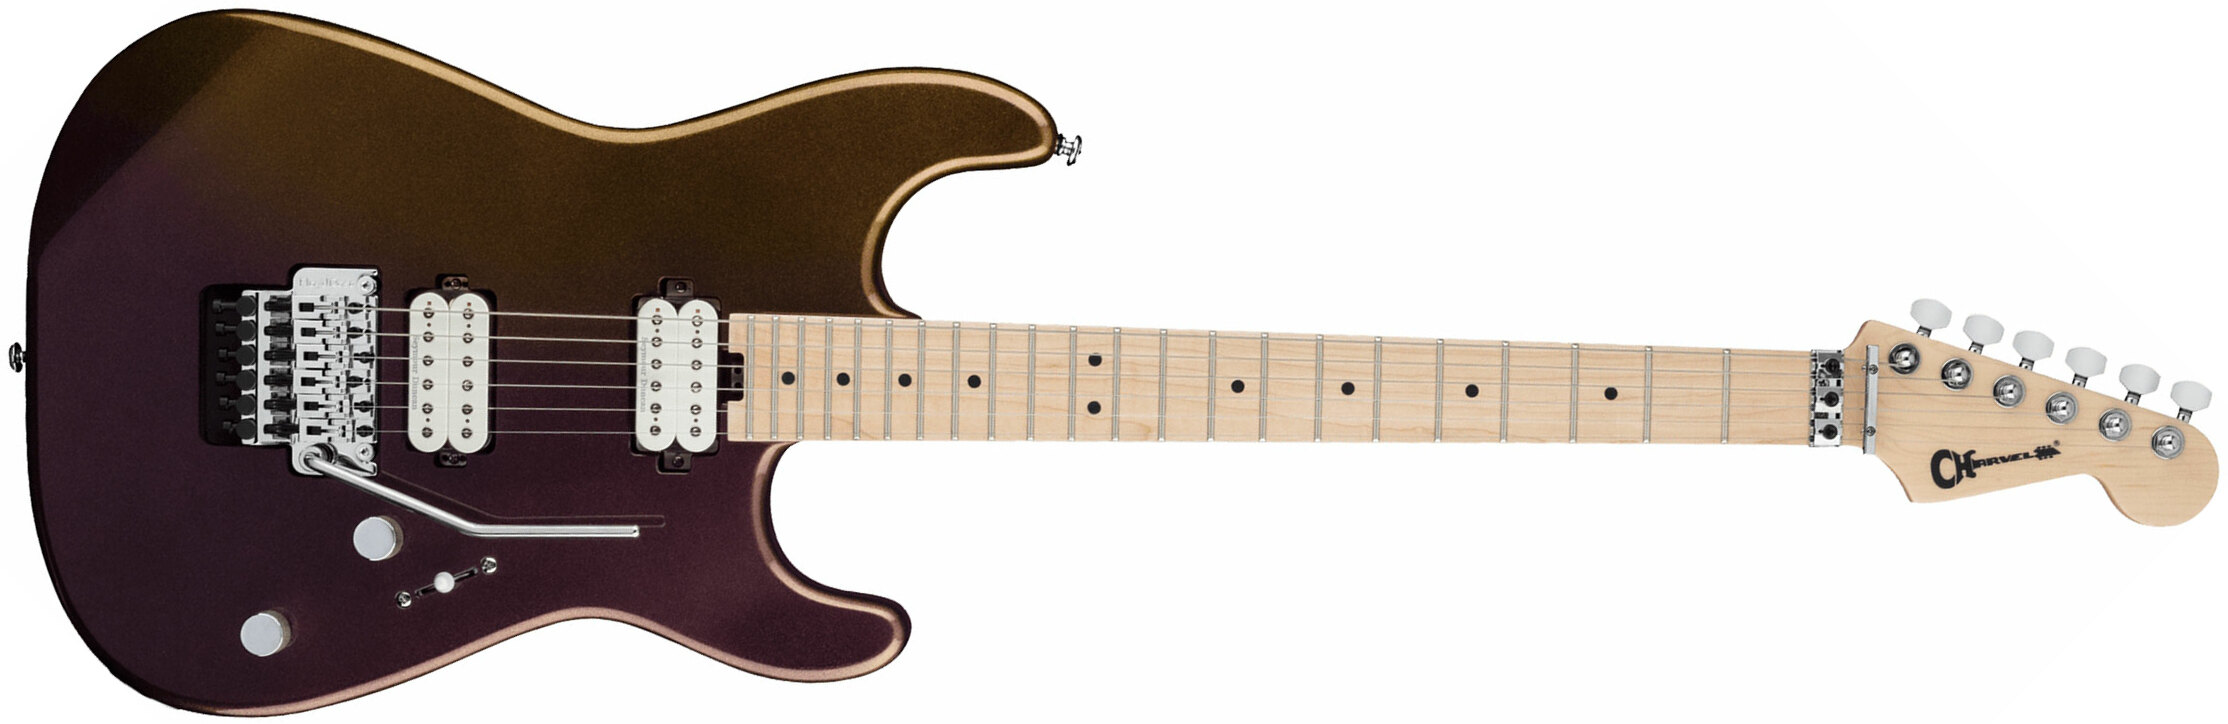 Charvel San Dimas Style 1 Hh Fr M Pro-mod 2h Seymour Duncan Mn - Chameleon - Str shape electric guitar - Main picture